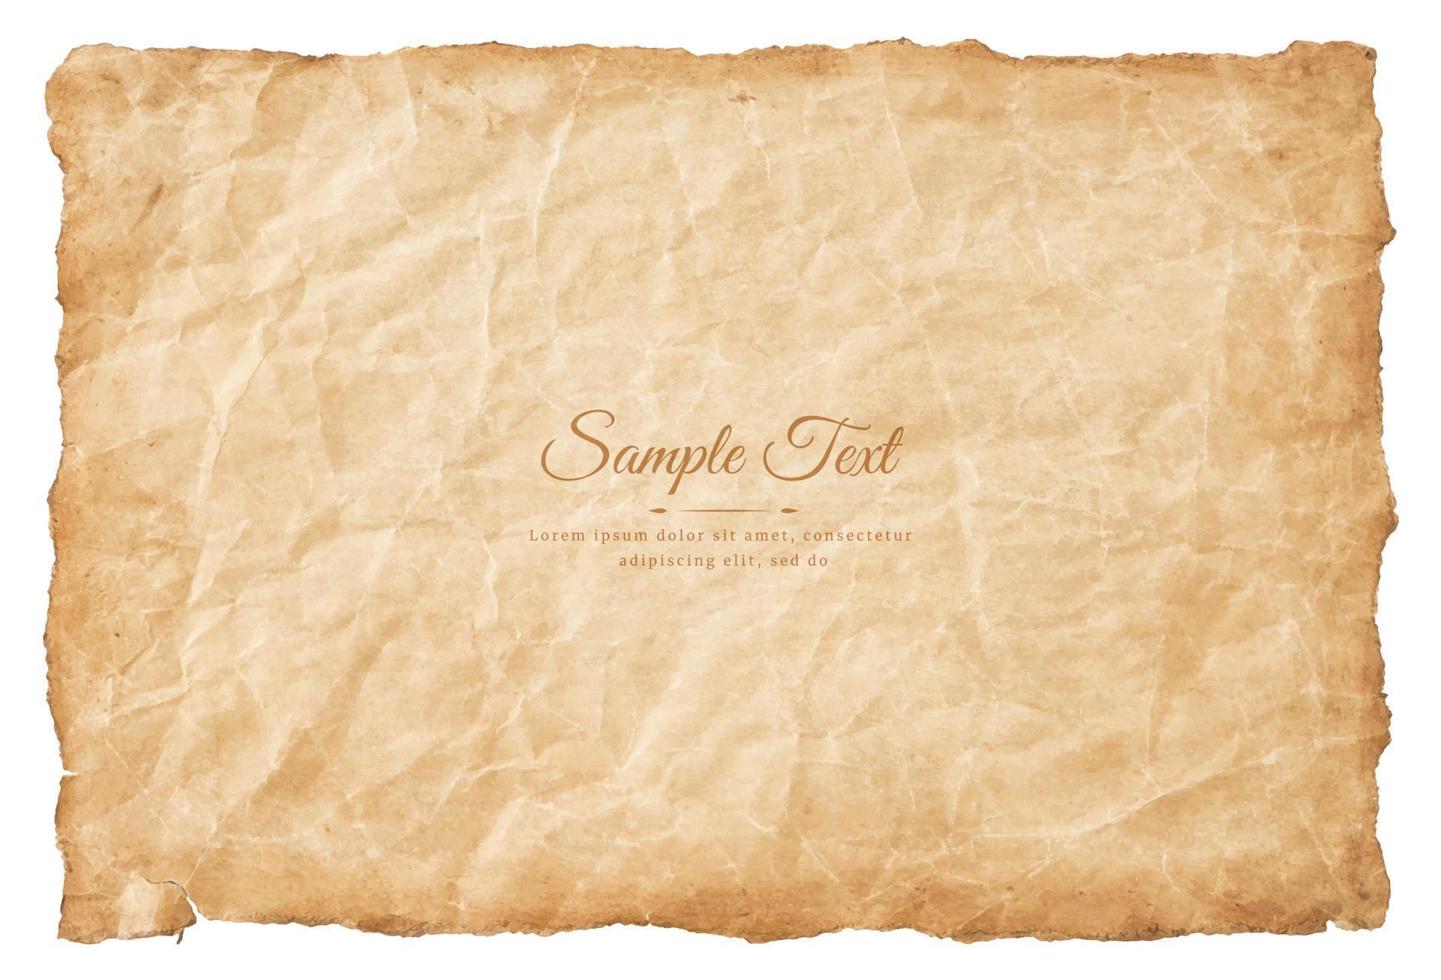 velha folha de papel pergaminho vintage envelhecida ou textura isolada no fundo branco vetor